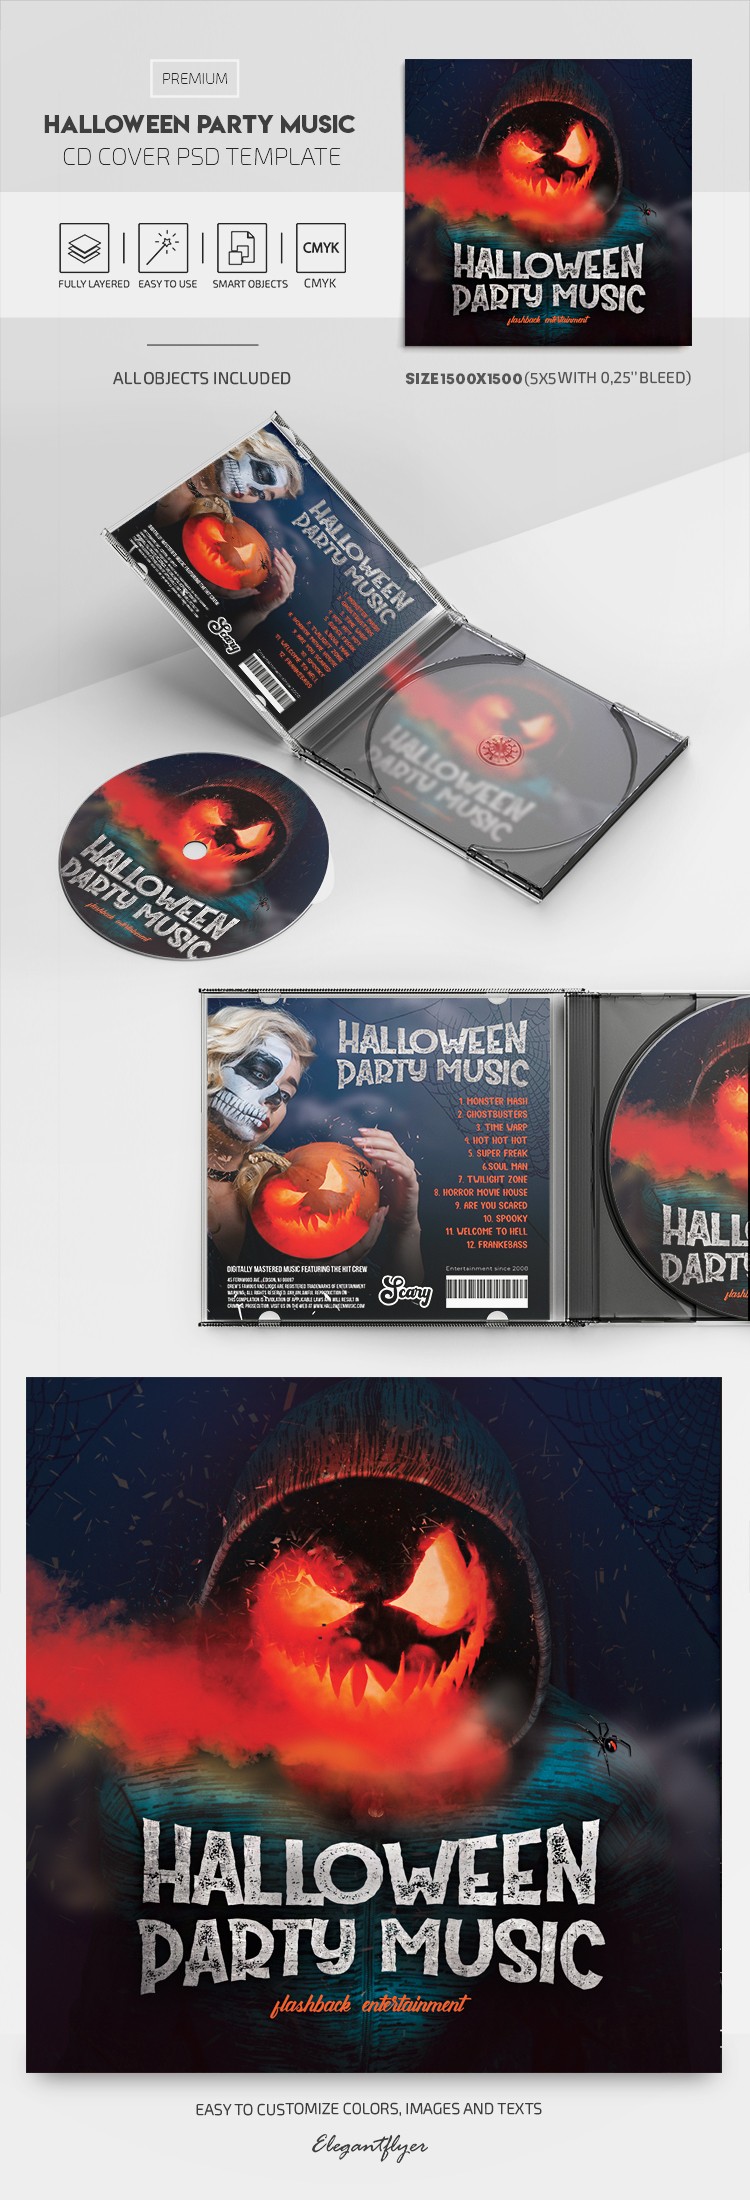 Capa do CD de Músicas para Festa de Halloween by ElegantFlyer